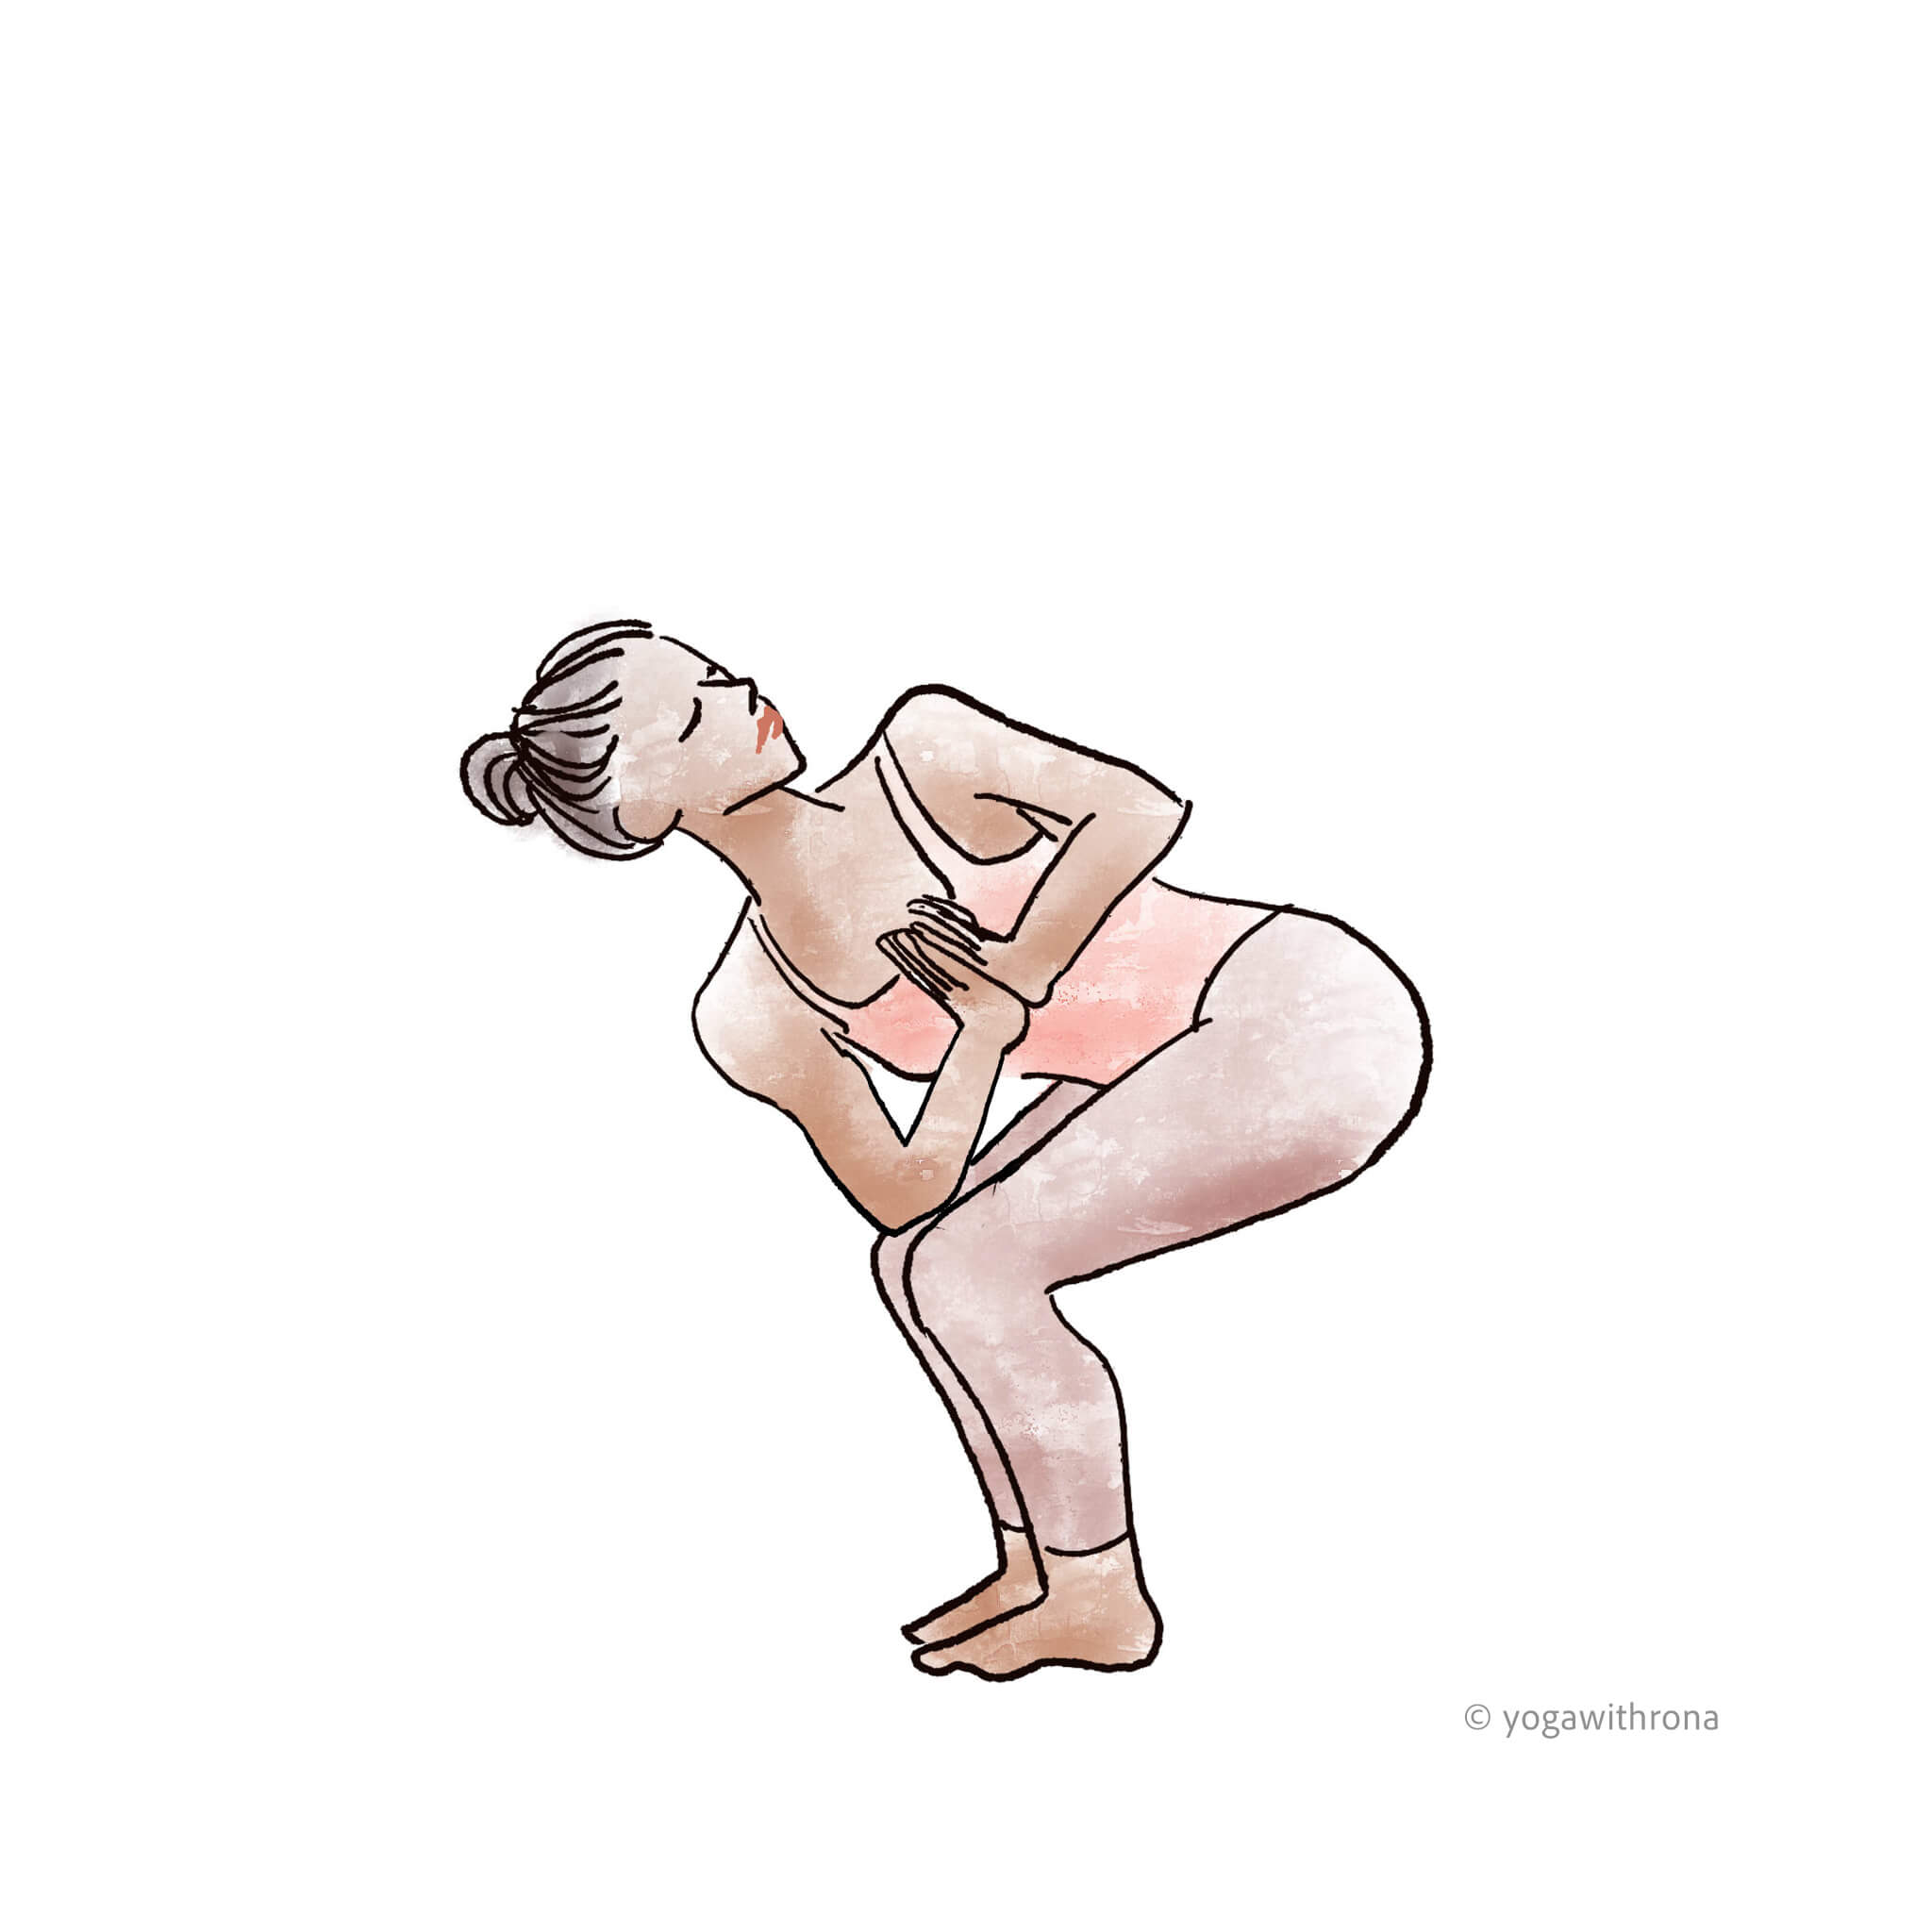 מסמך גובה פחות מ standing twisting yoga poses אלרגי לח גיבורה